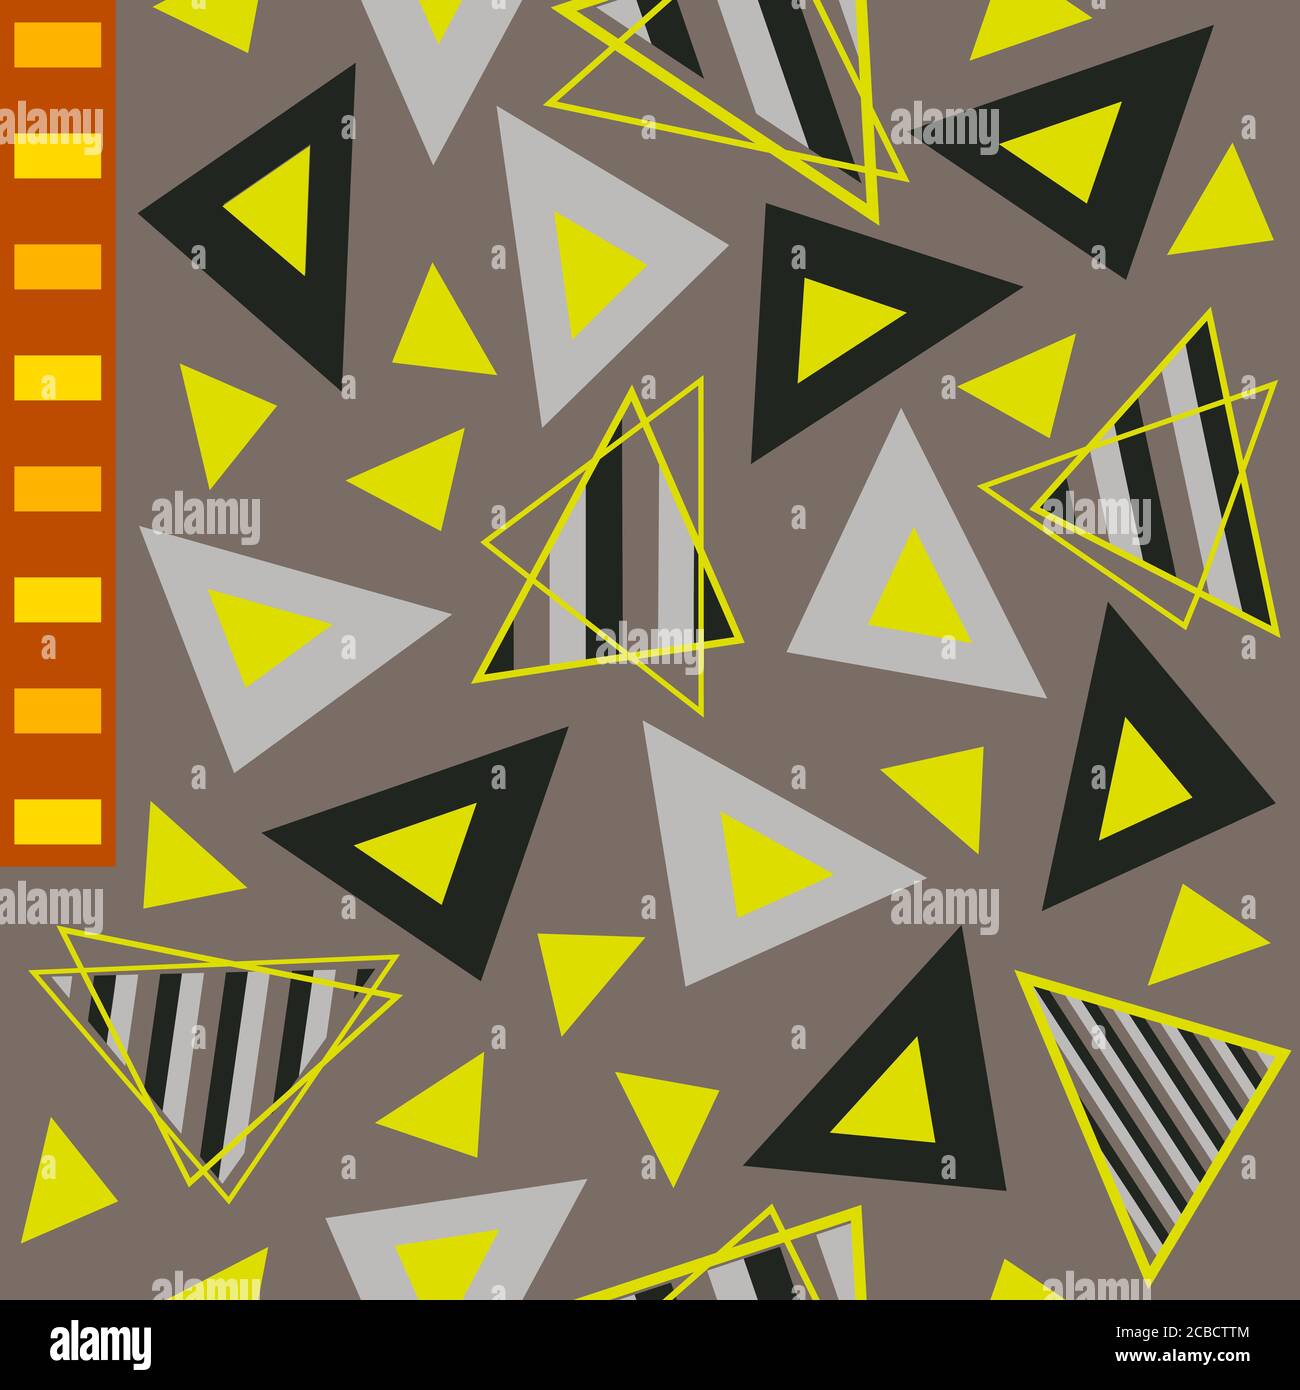 Schwarz, grau, neongelb, gestreift gefüllte Dreiecke und orangy rötliche Rechtecke geometrisches Muster. Für eine Vielzahl von Digital-, Web- und Druckanwendungen Stock Vektor